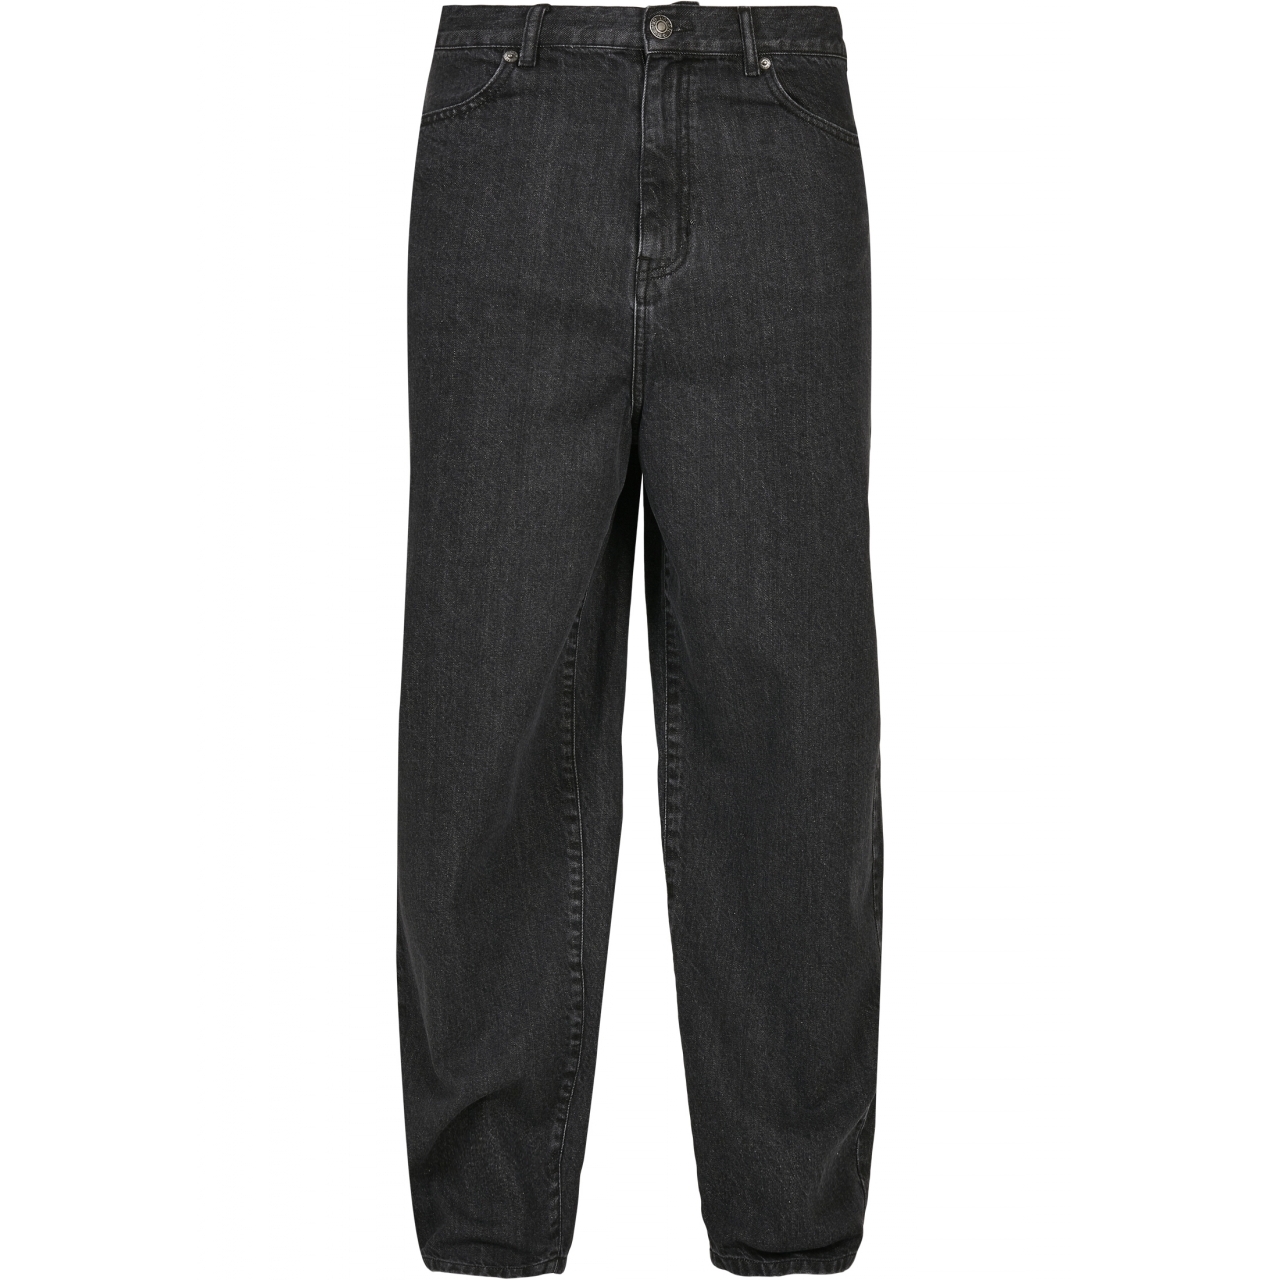 Džíny Urban Classics 90s Jeans - černé, 34